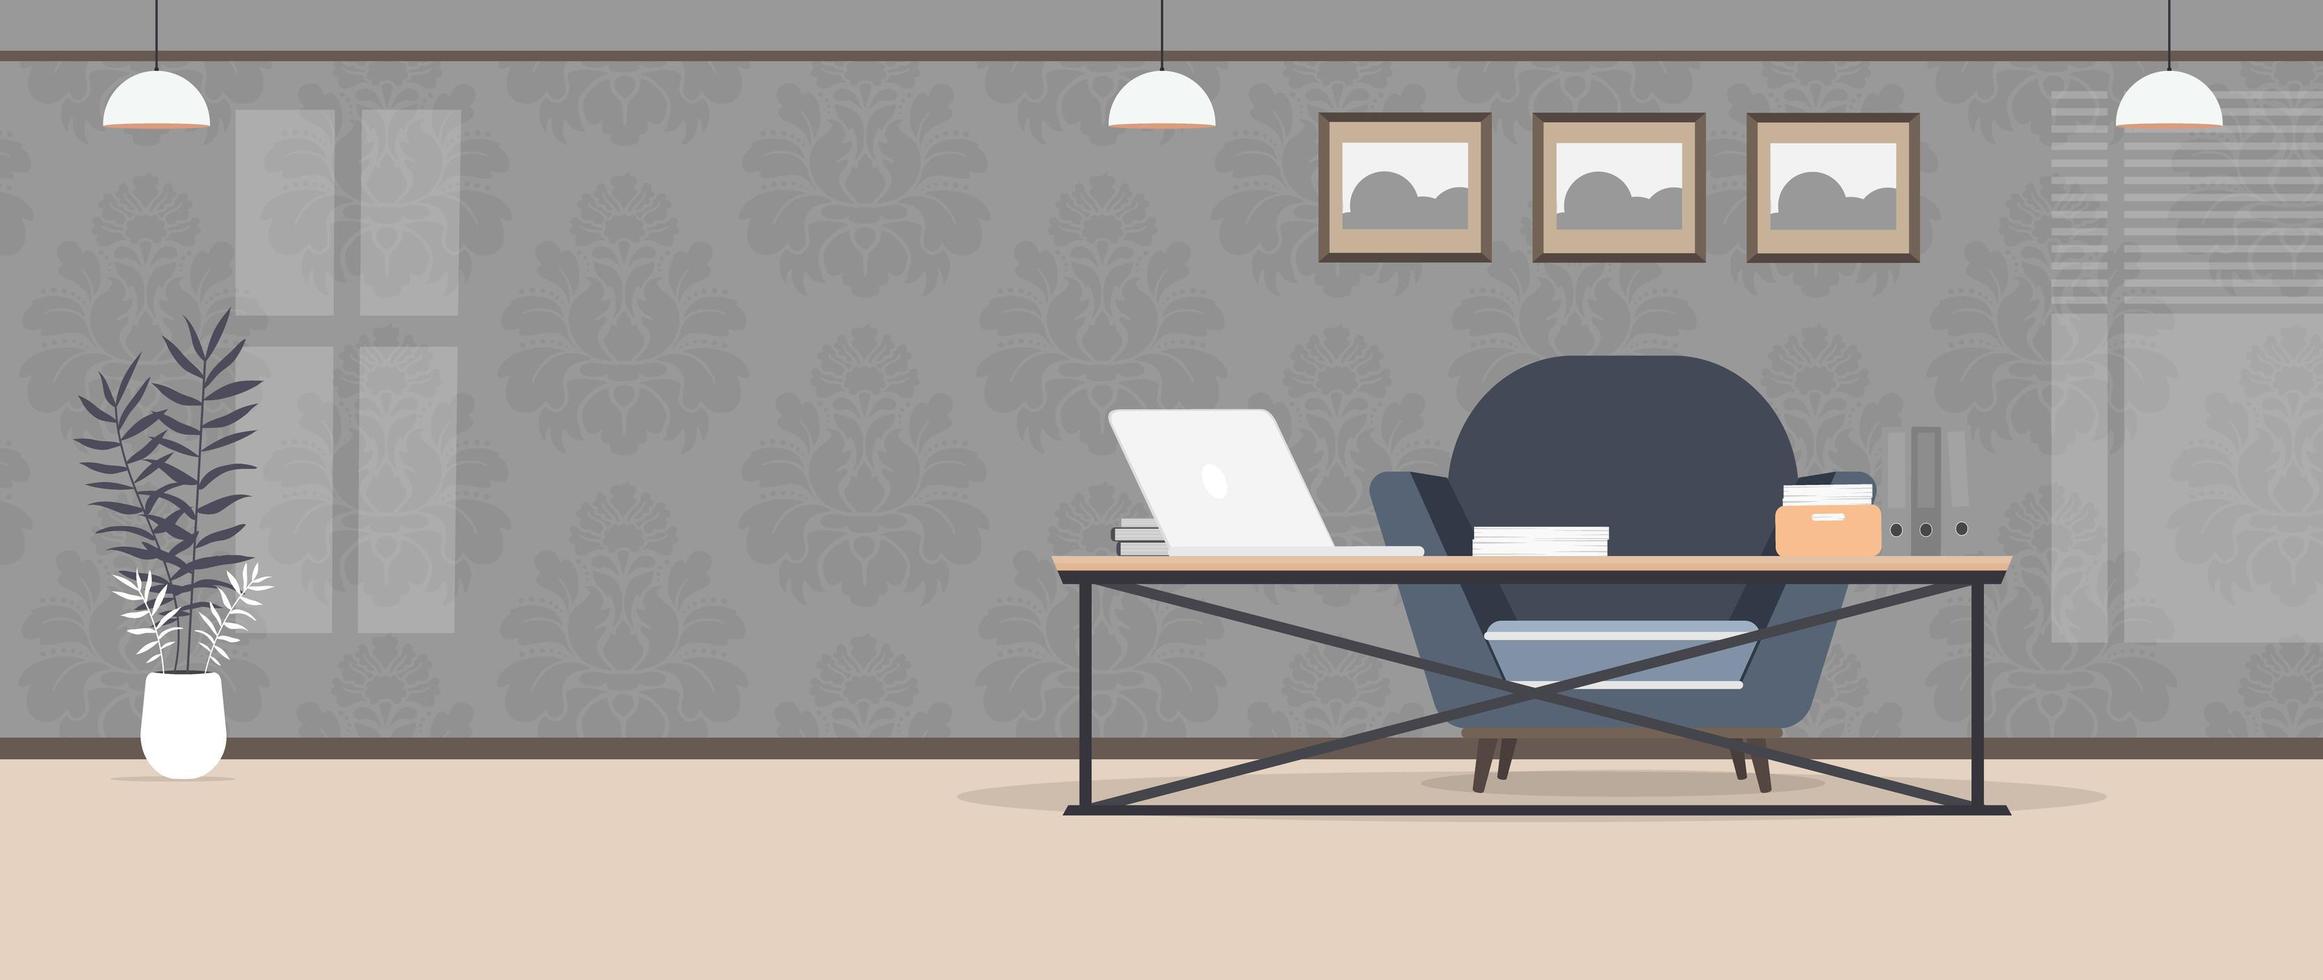 Habitacion estilo loft. cuarto brillante. lugar de trabajo mesa con laptop, libros y documentos. flor en maceta, mueble de madera, cuadros. vector. vector